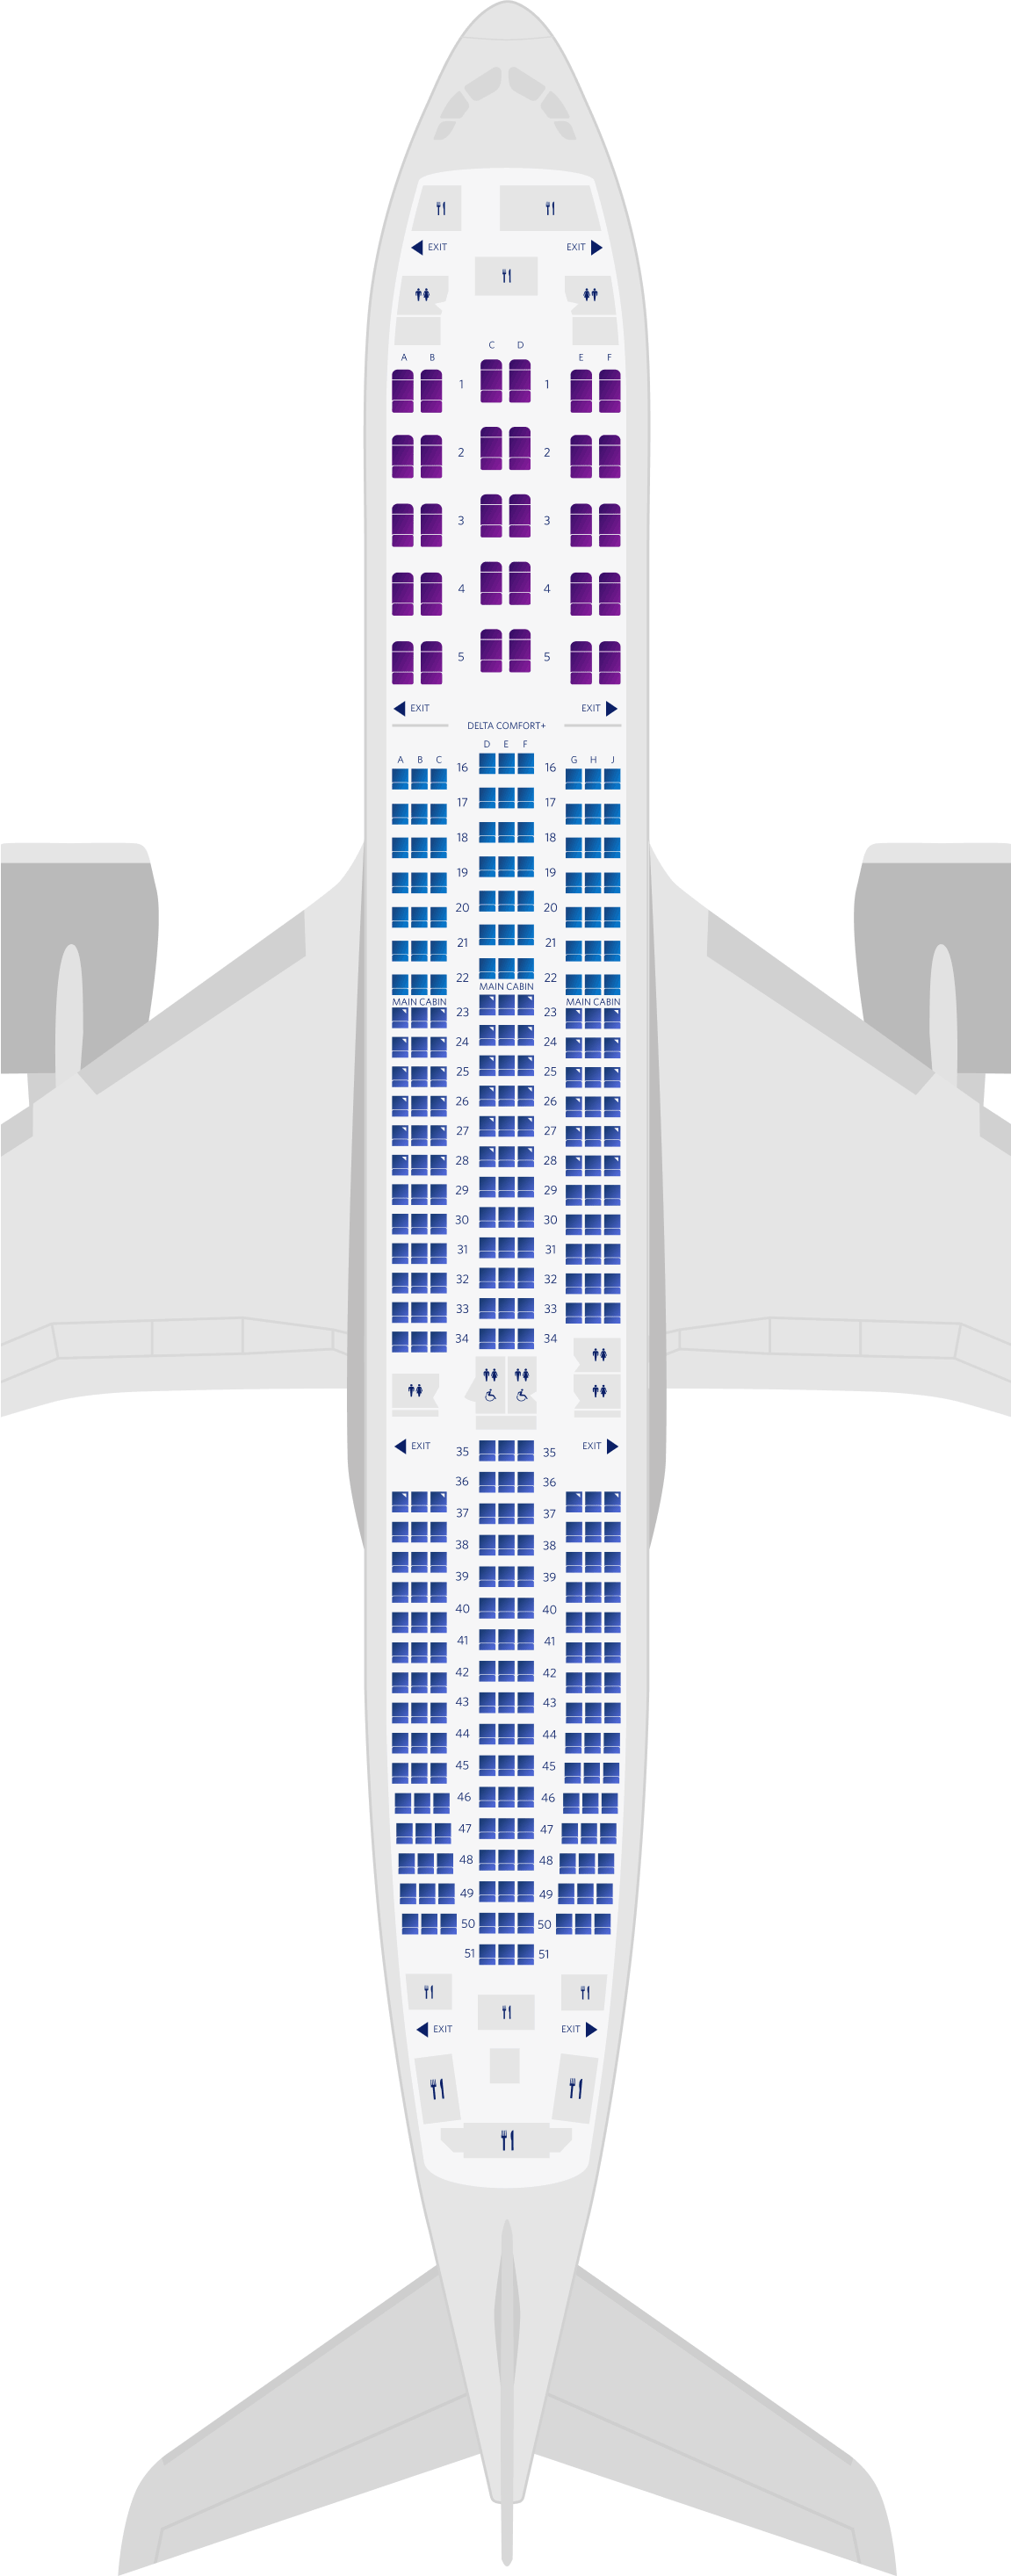 Plan des sièges de l'Airbus A350-900 3